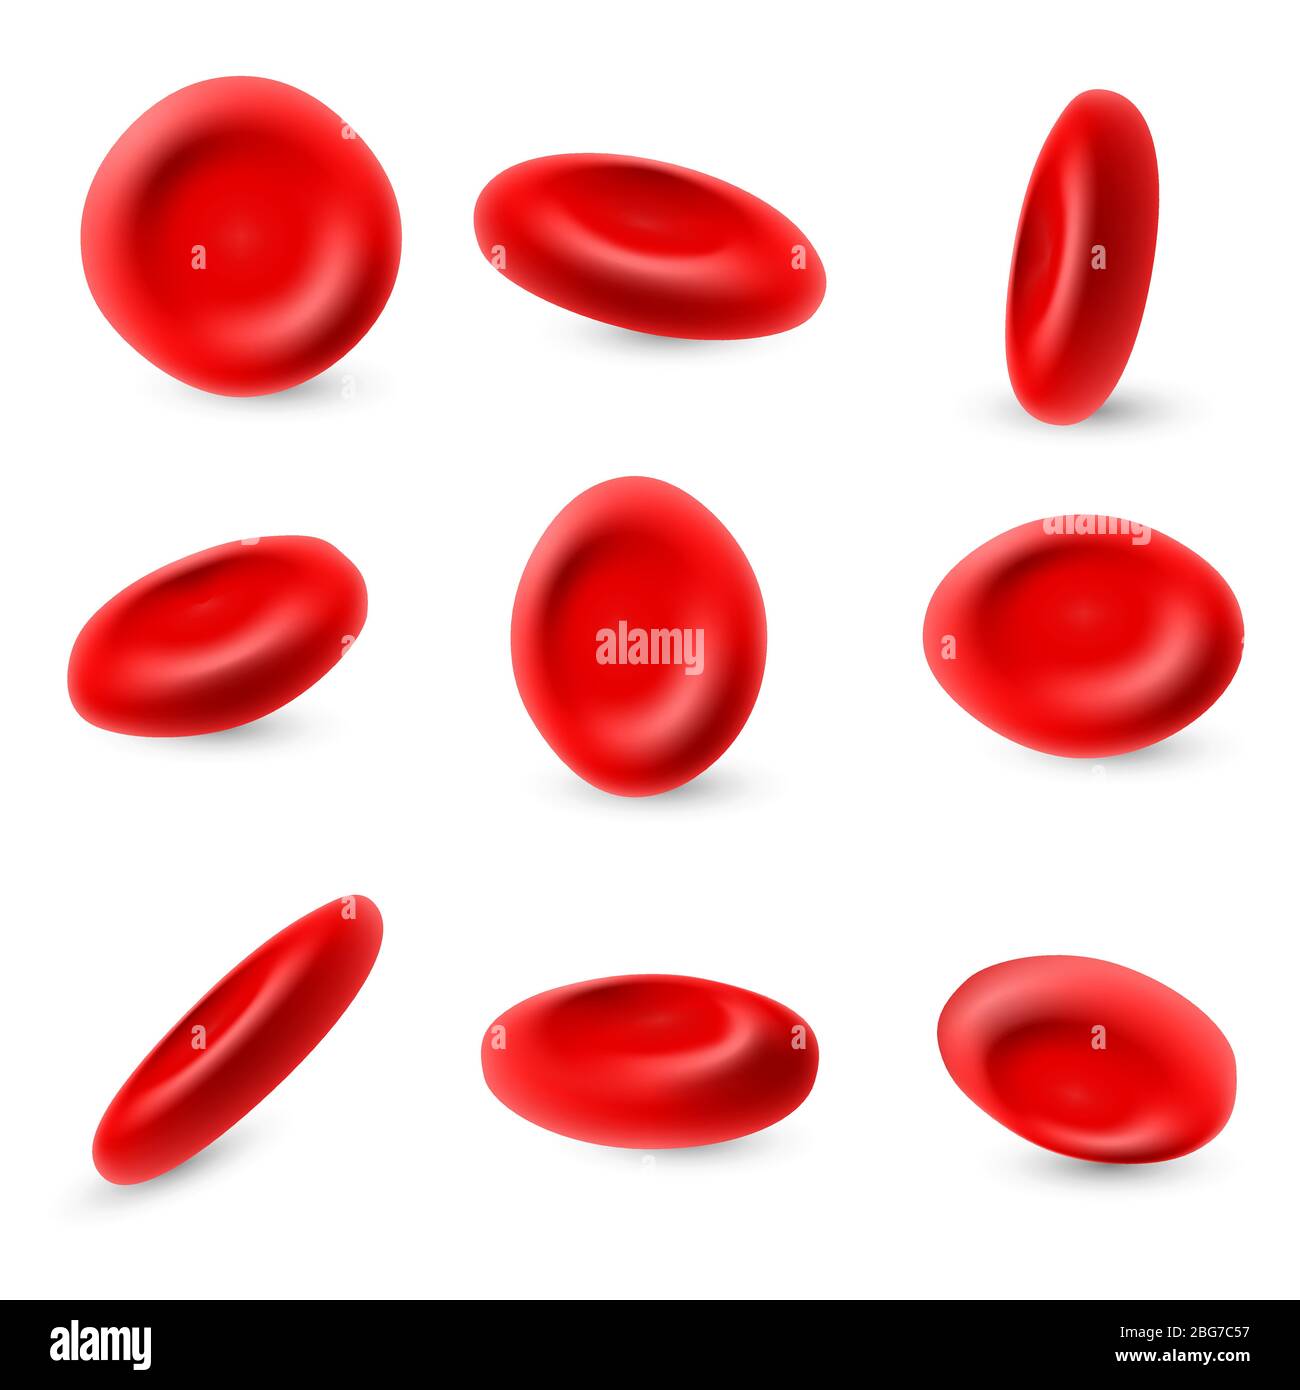 Humane Erythrozyten, 3d mikroskopische rote Blutkörperchen Vektor auf weißem Hintergrund isoliert gesetzt. Rote Blutkörperchen, Mikrobiologie Gesundheit Mensch Illustration Stock Vektor